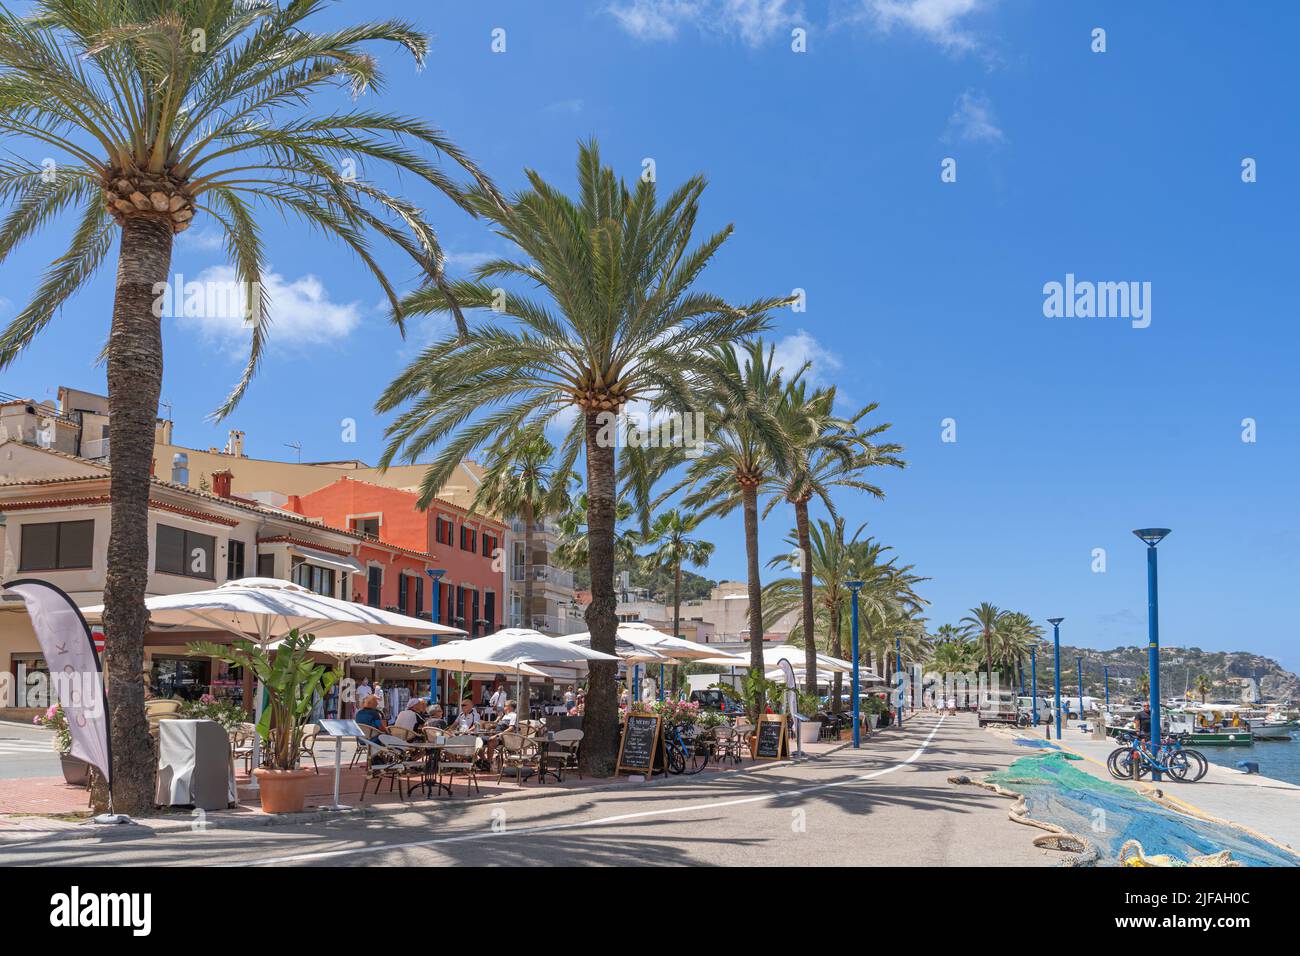 Port de Andratx on the island of Majorca Stock Photo